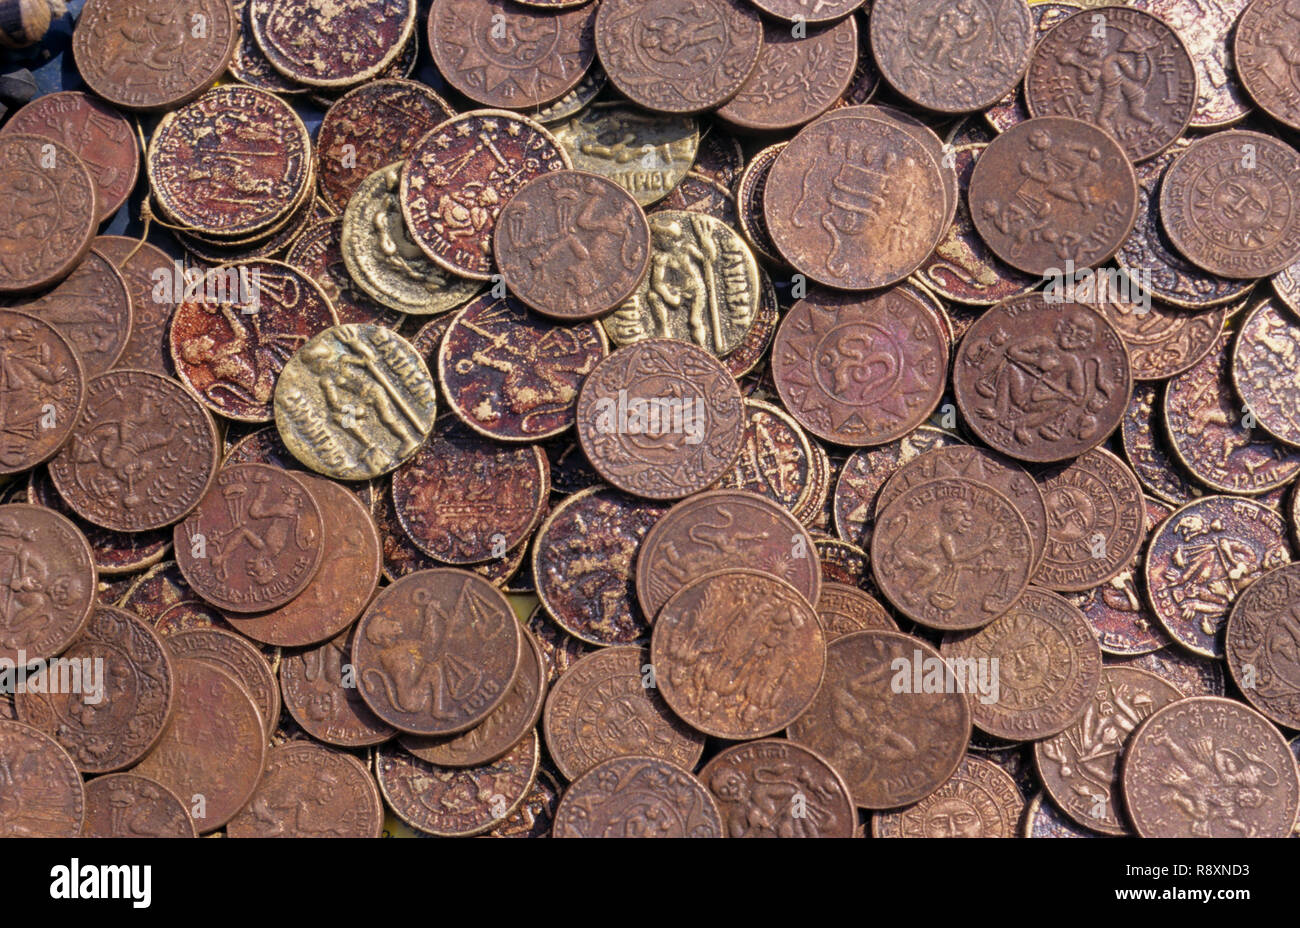 Monedas, monedas redondas, monedas de cobre, monedas circulares, monedas de latón, monedas antiguas, monedas antiguas, Foto de stock